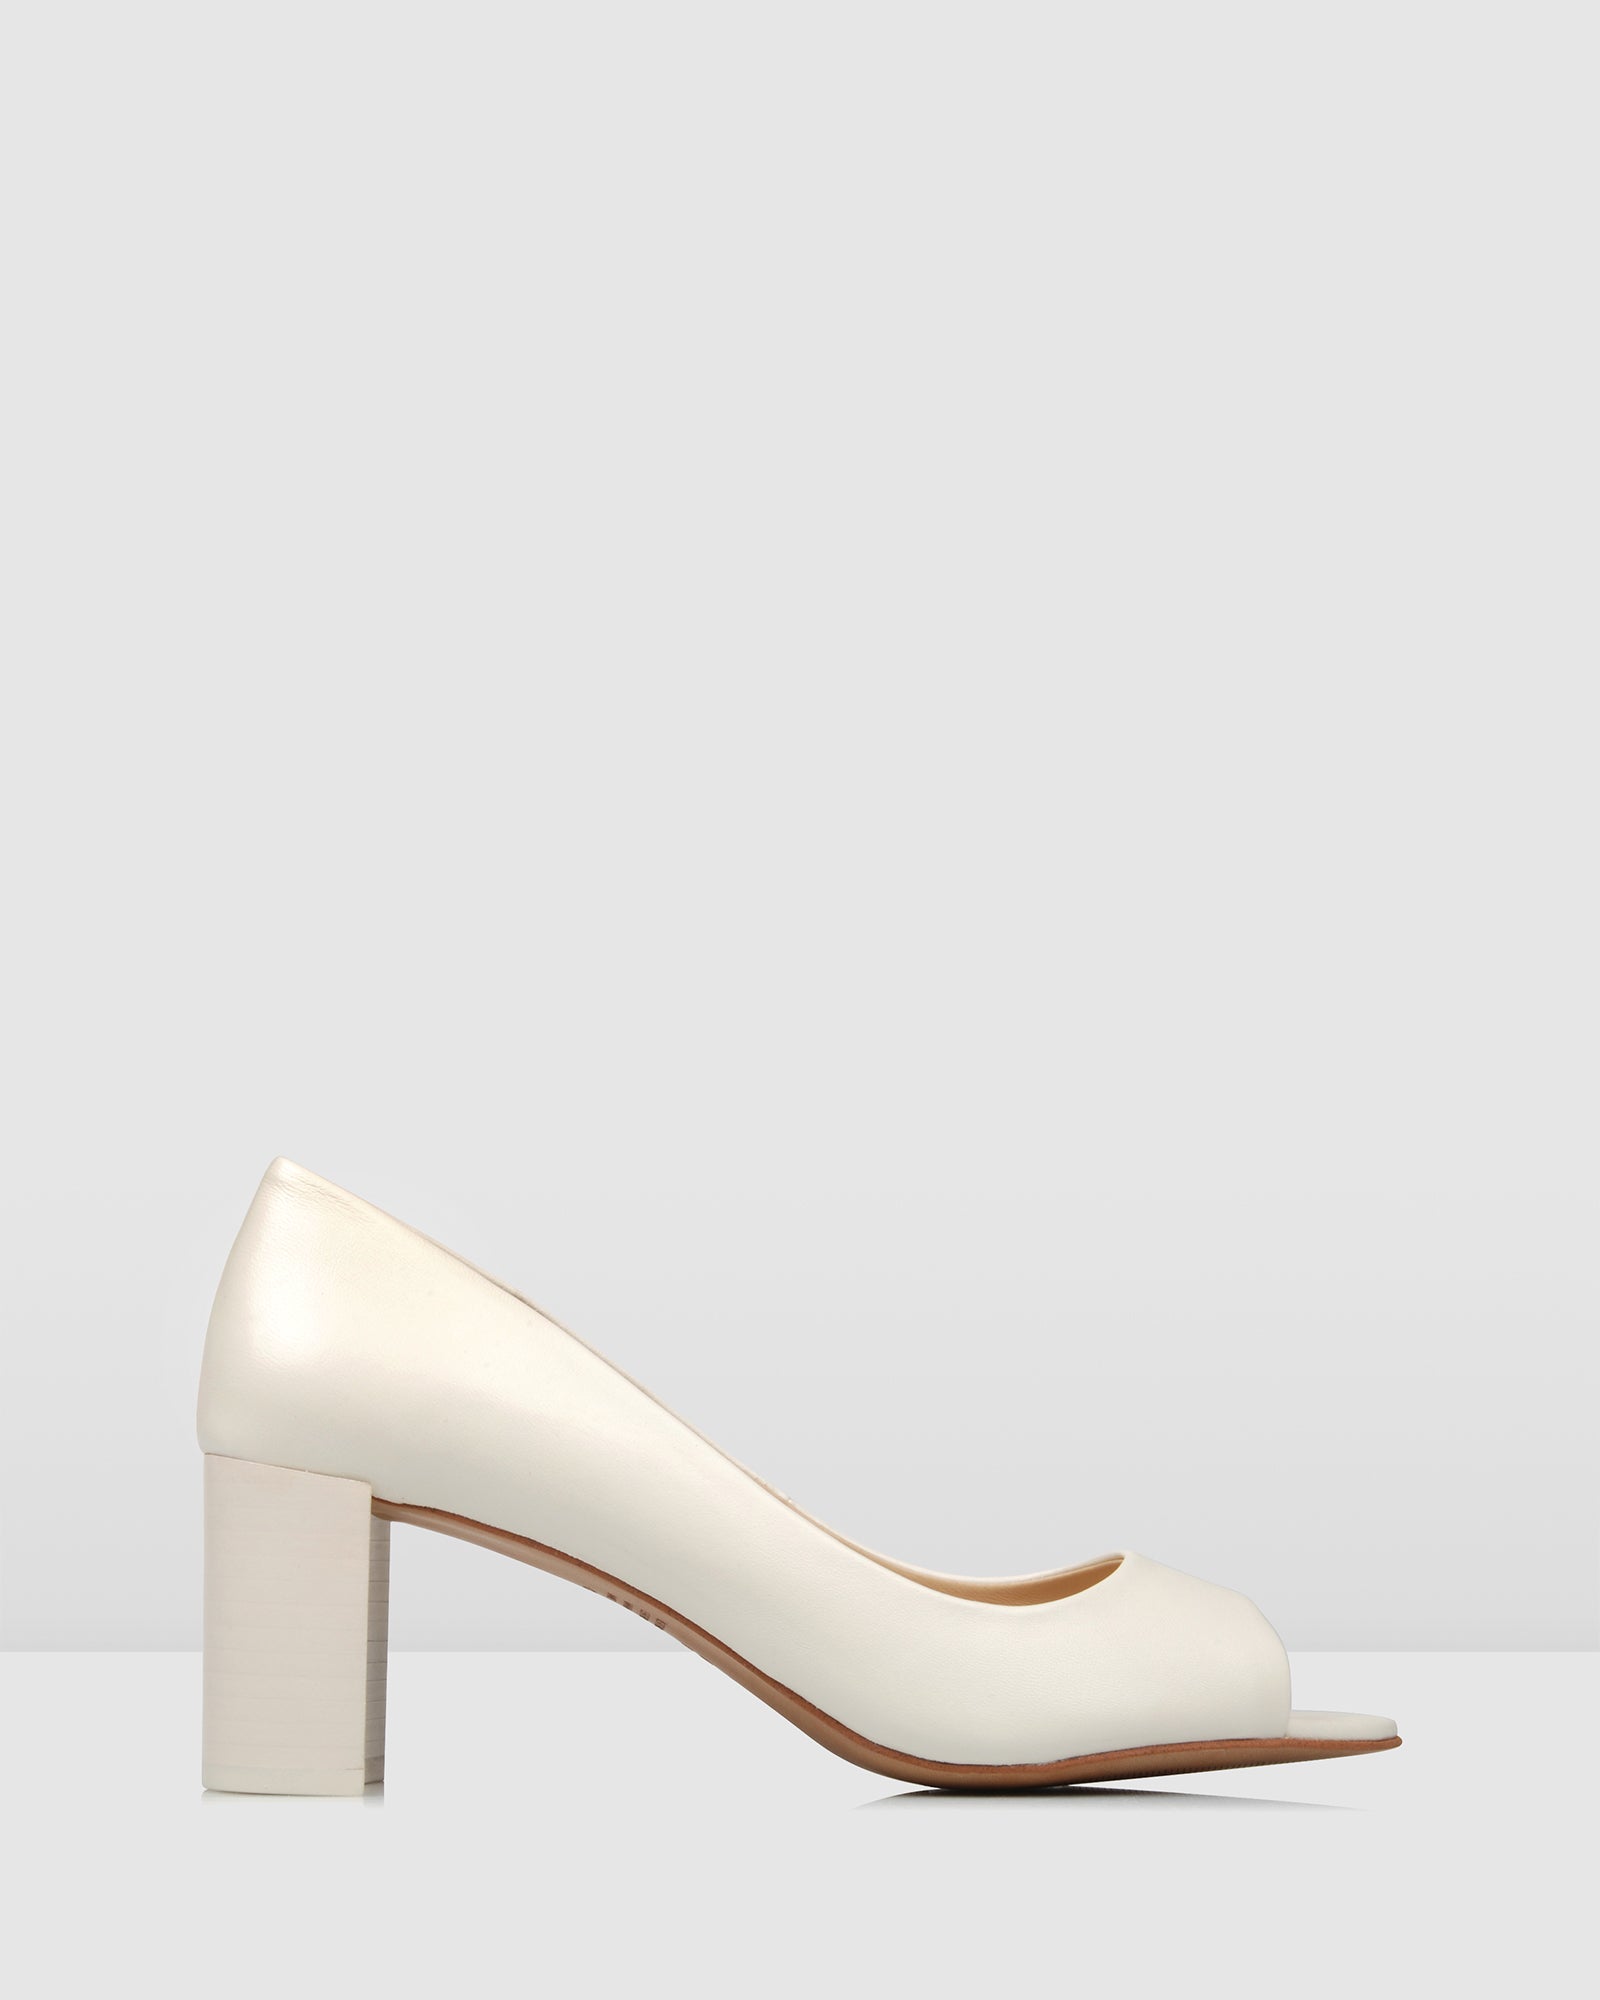 white mid heels